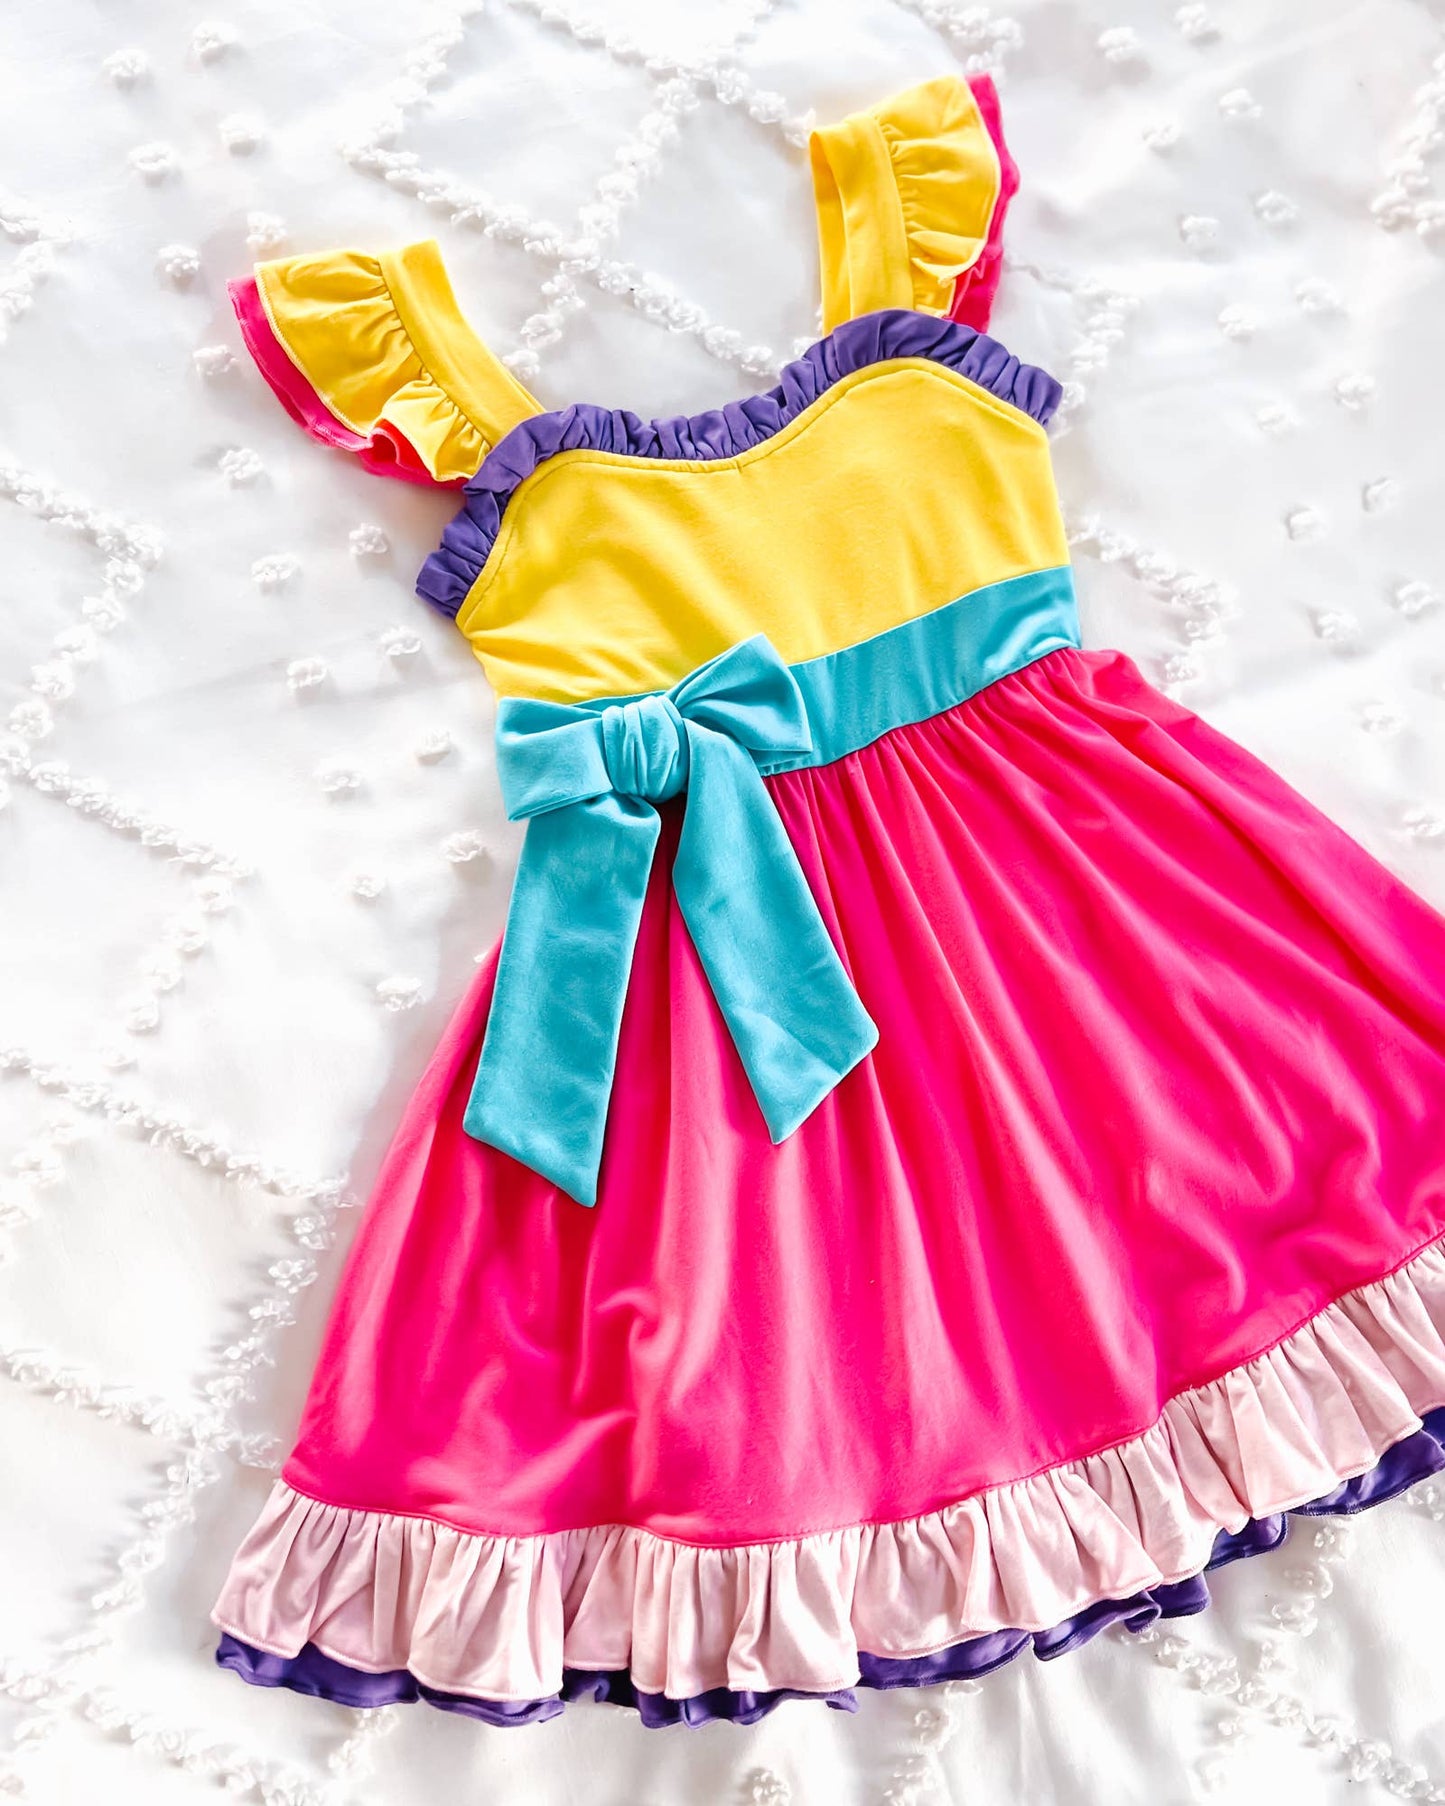 Fairytale Twirl/So Fancy Dress